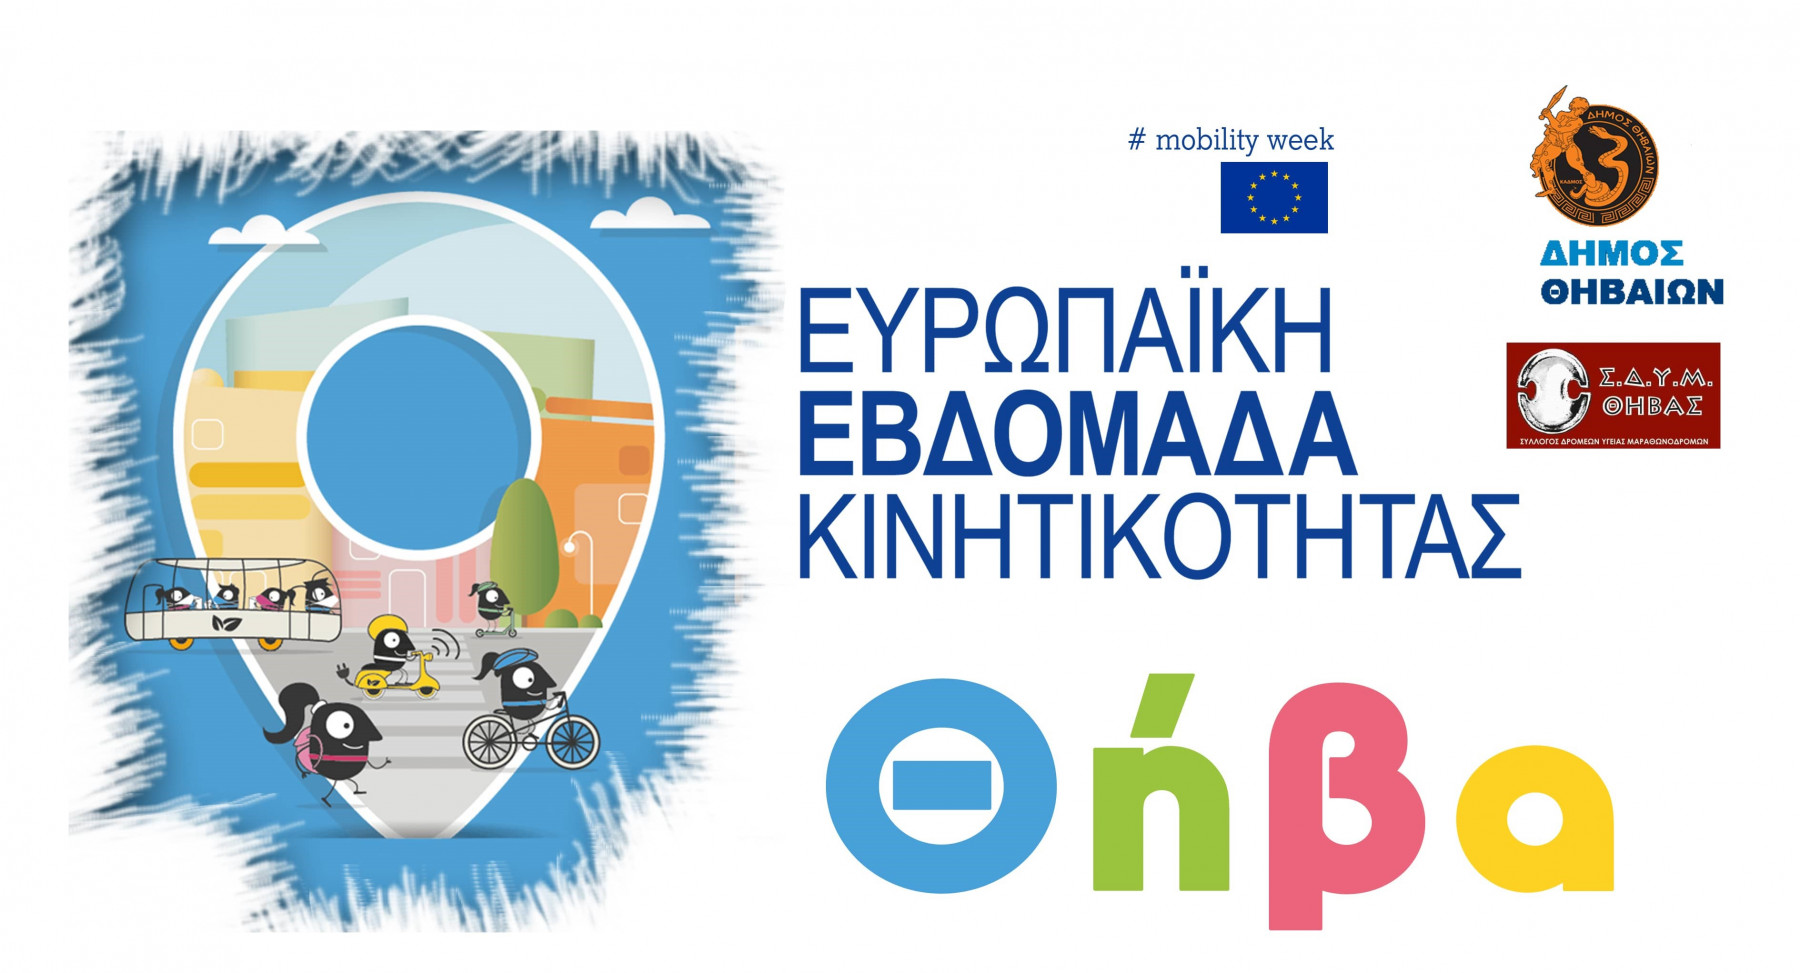 Ο Δήμος Θηβαίων συμμετέχει και φέτος στην Ευρωπαϊκή Εβδομάδα Κινητικότητας